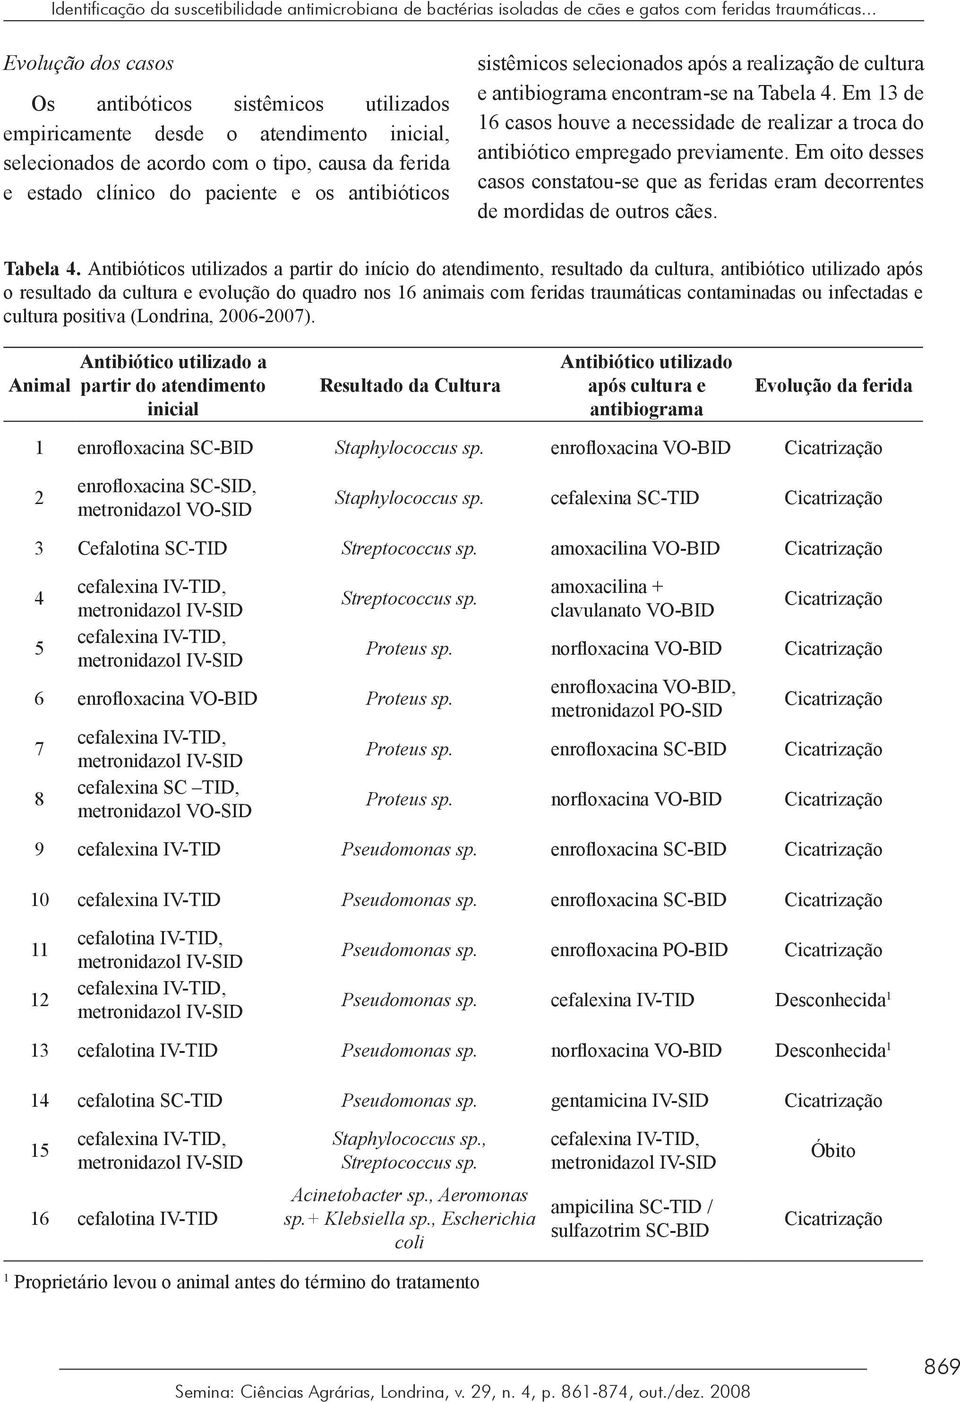 sistêmicos selecionados após a realização de cultura e antibiograma encontram-se na Tabela 4. Em 13 de 16 casos houve a necessidade de realizar a troca do antibiótico empregado previamente.